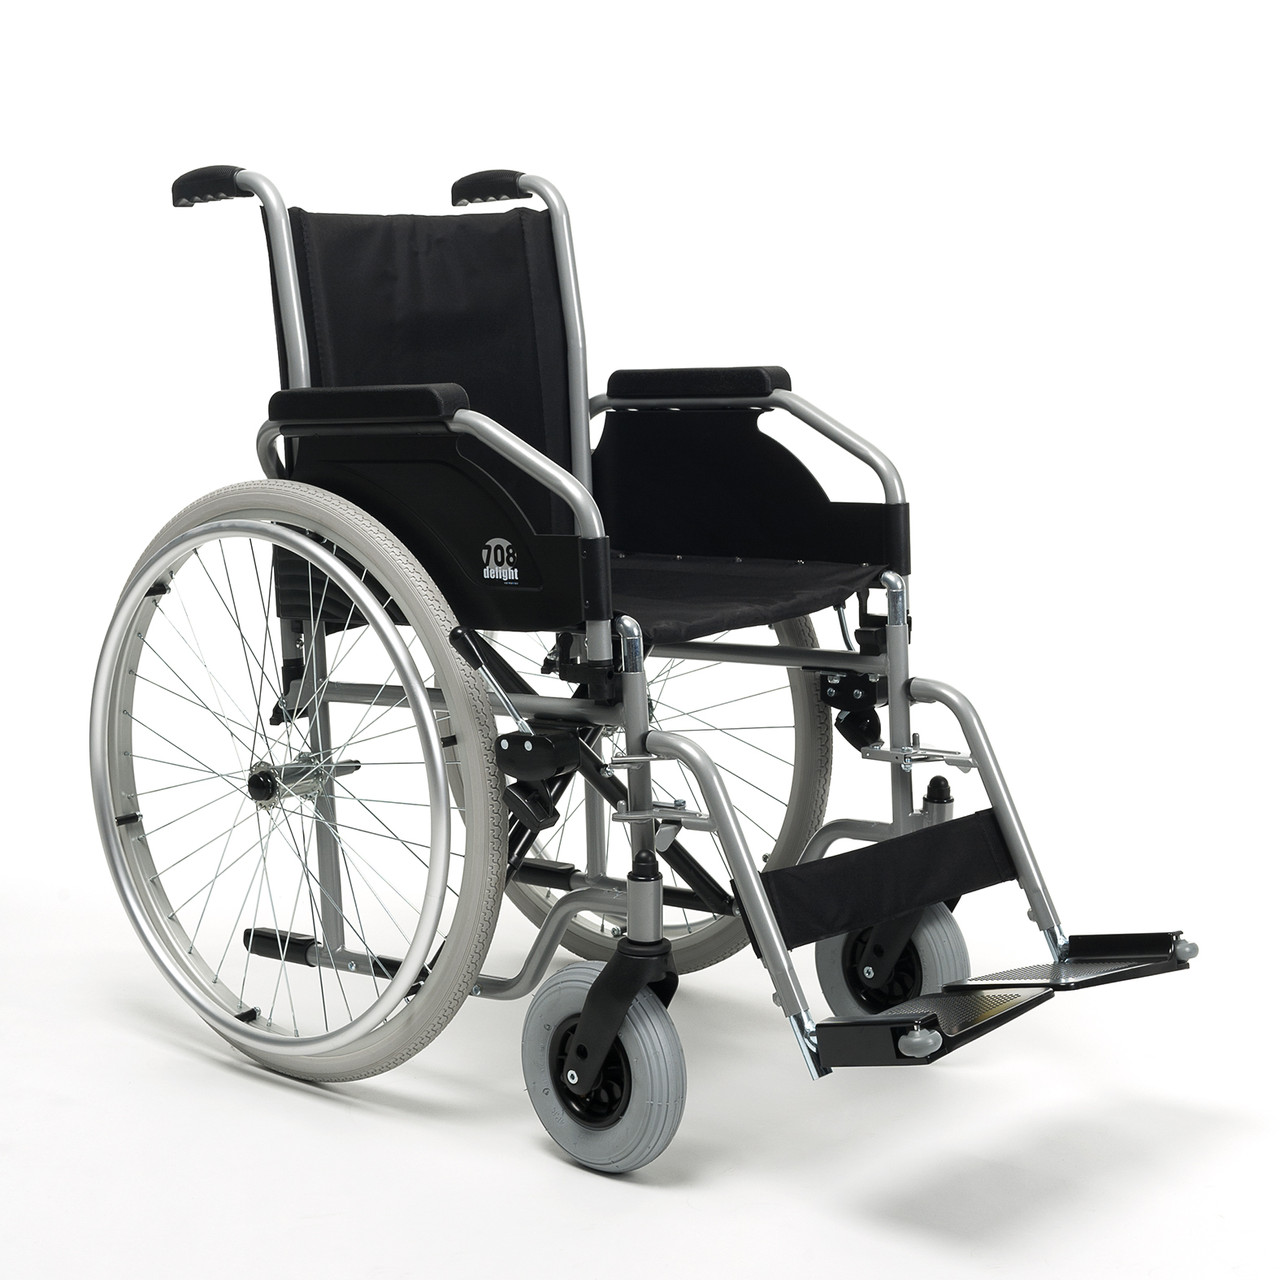 Инвалидная коляска для взрослых 708D Vermeiren (Сидение 46 см., литые колеса)